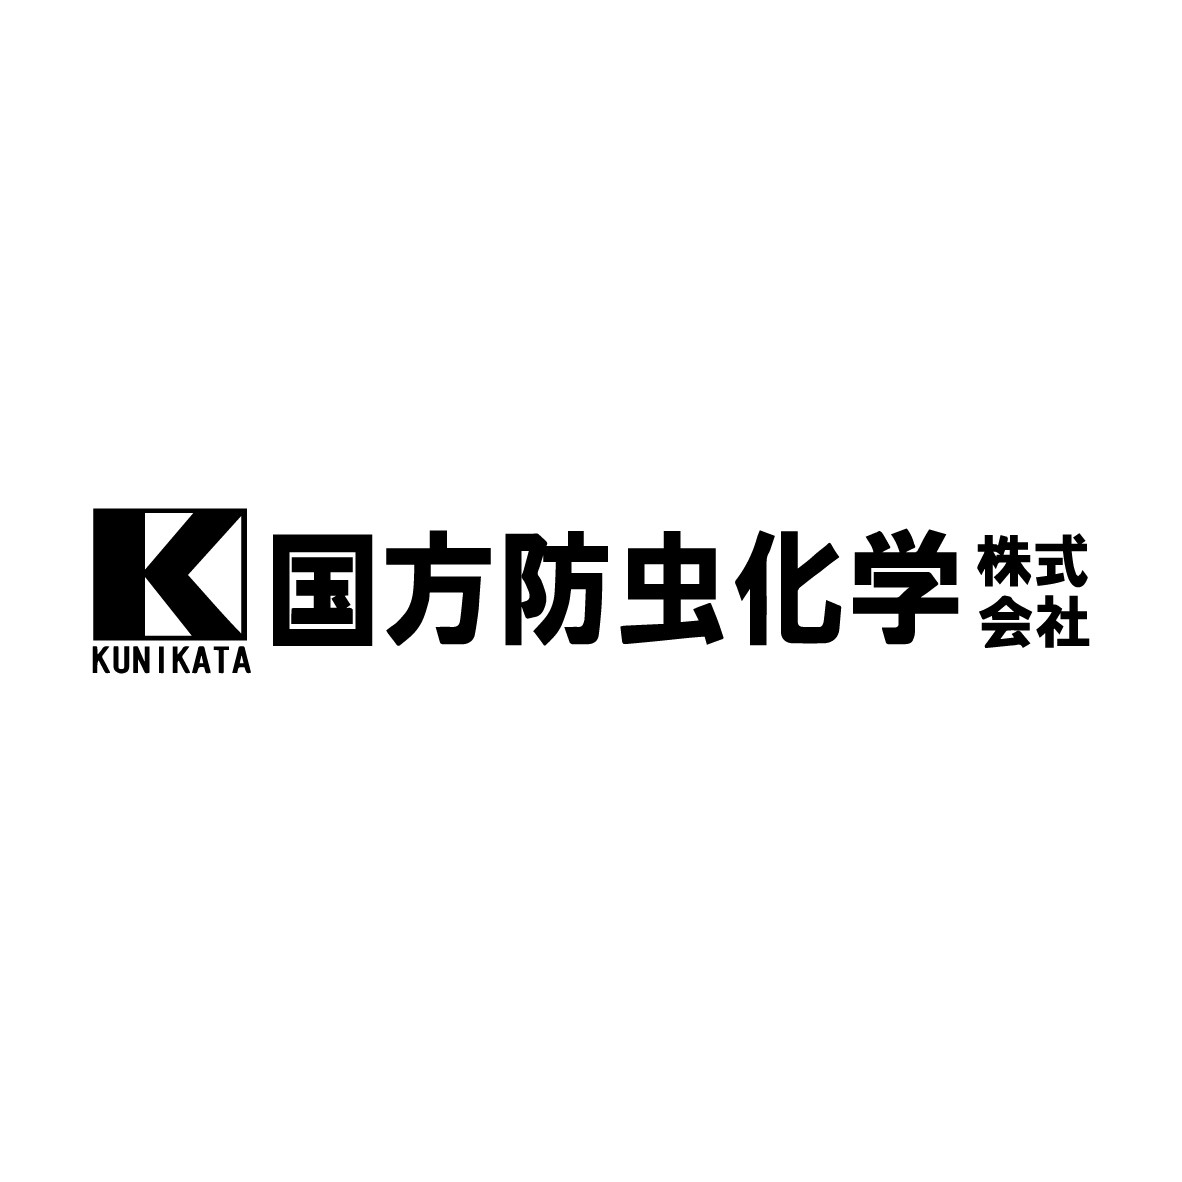 国方防虫化学株式会社のロゴ